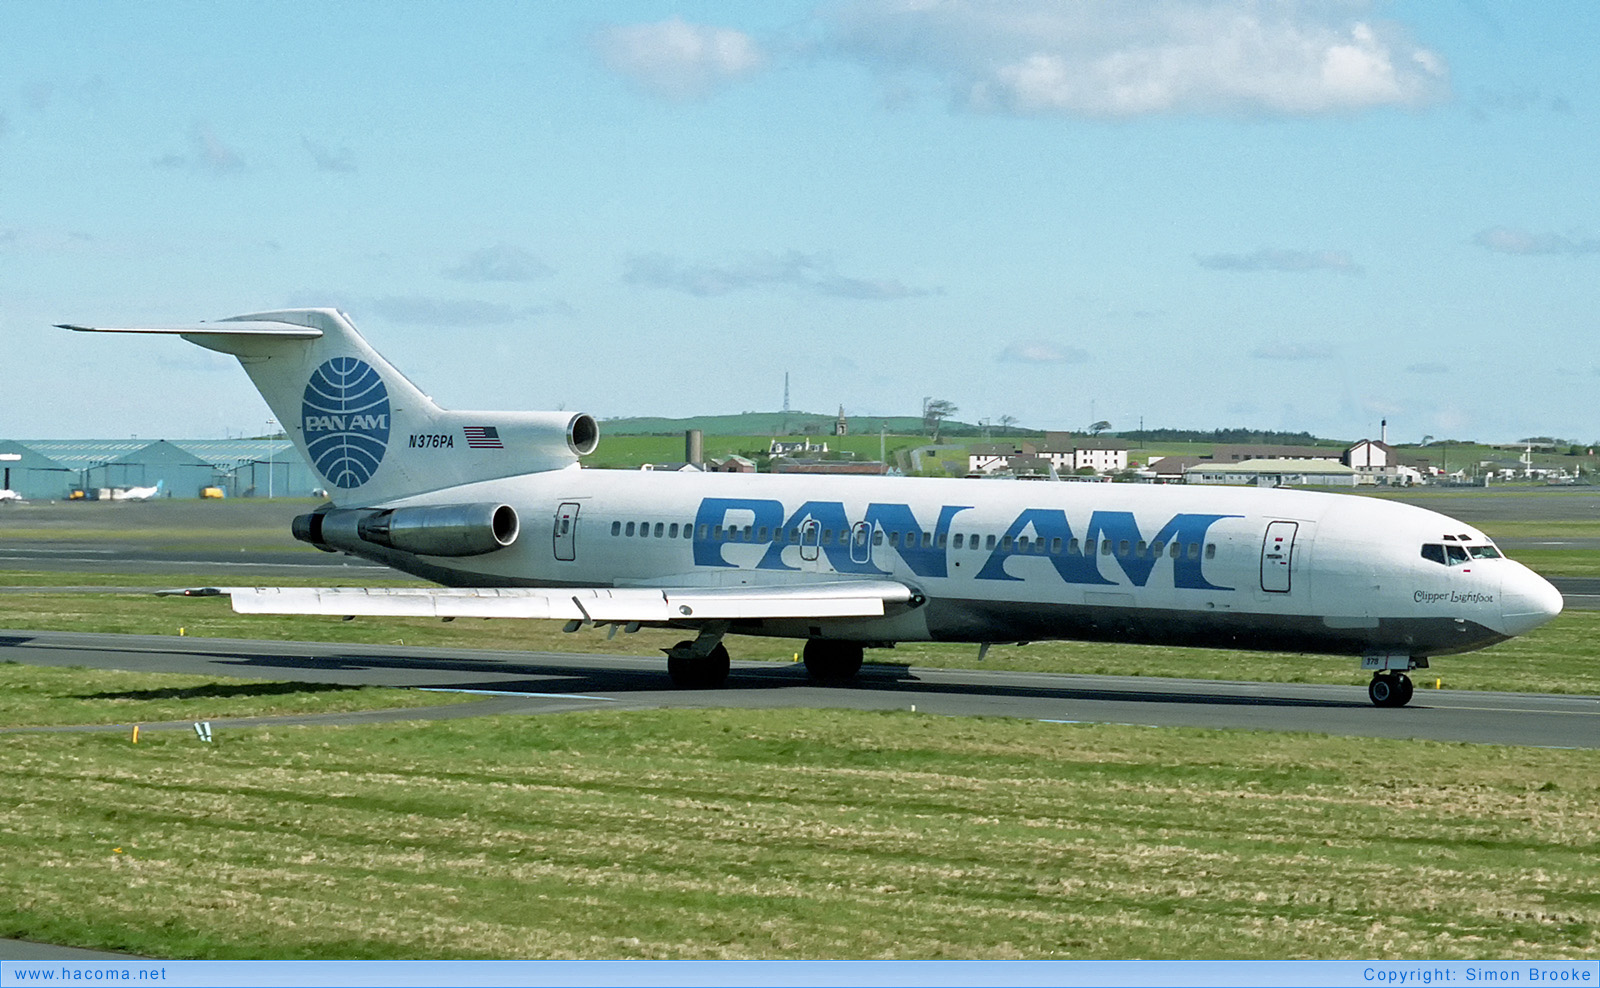 Foto von N376PA - Pan Am Clipper Lightfoot - Flughafen Glasgow-Prestwick - 05.1991